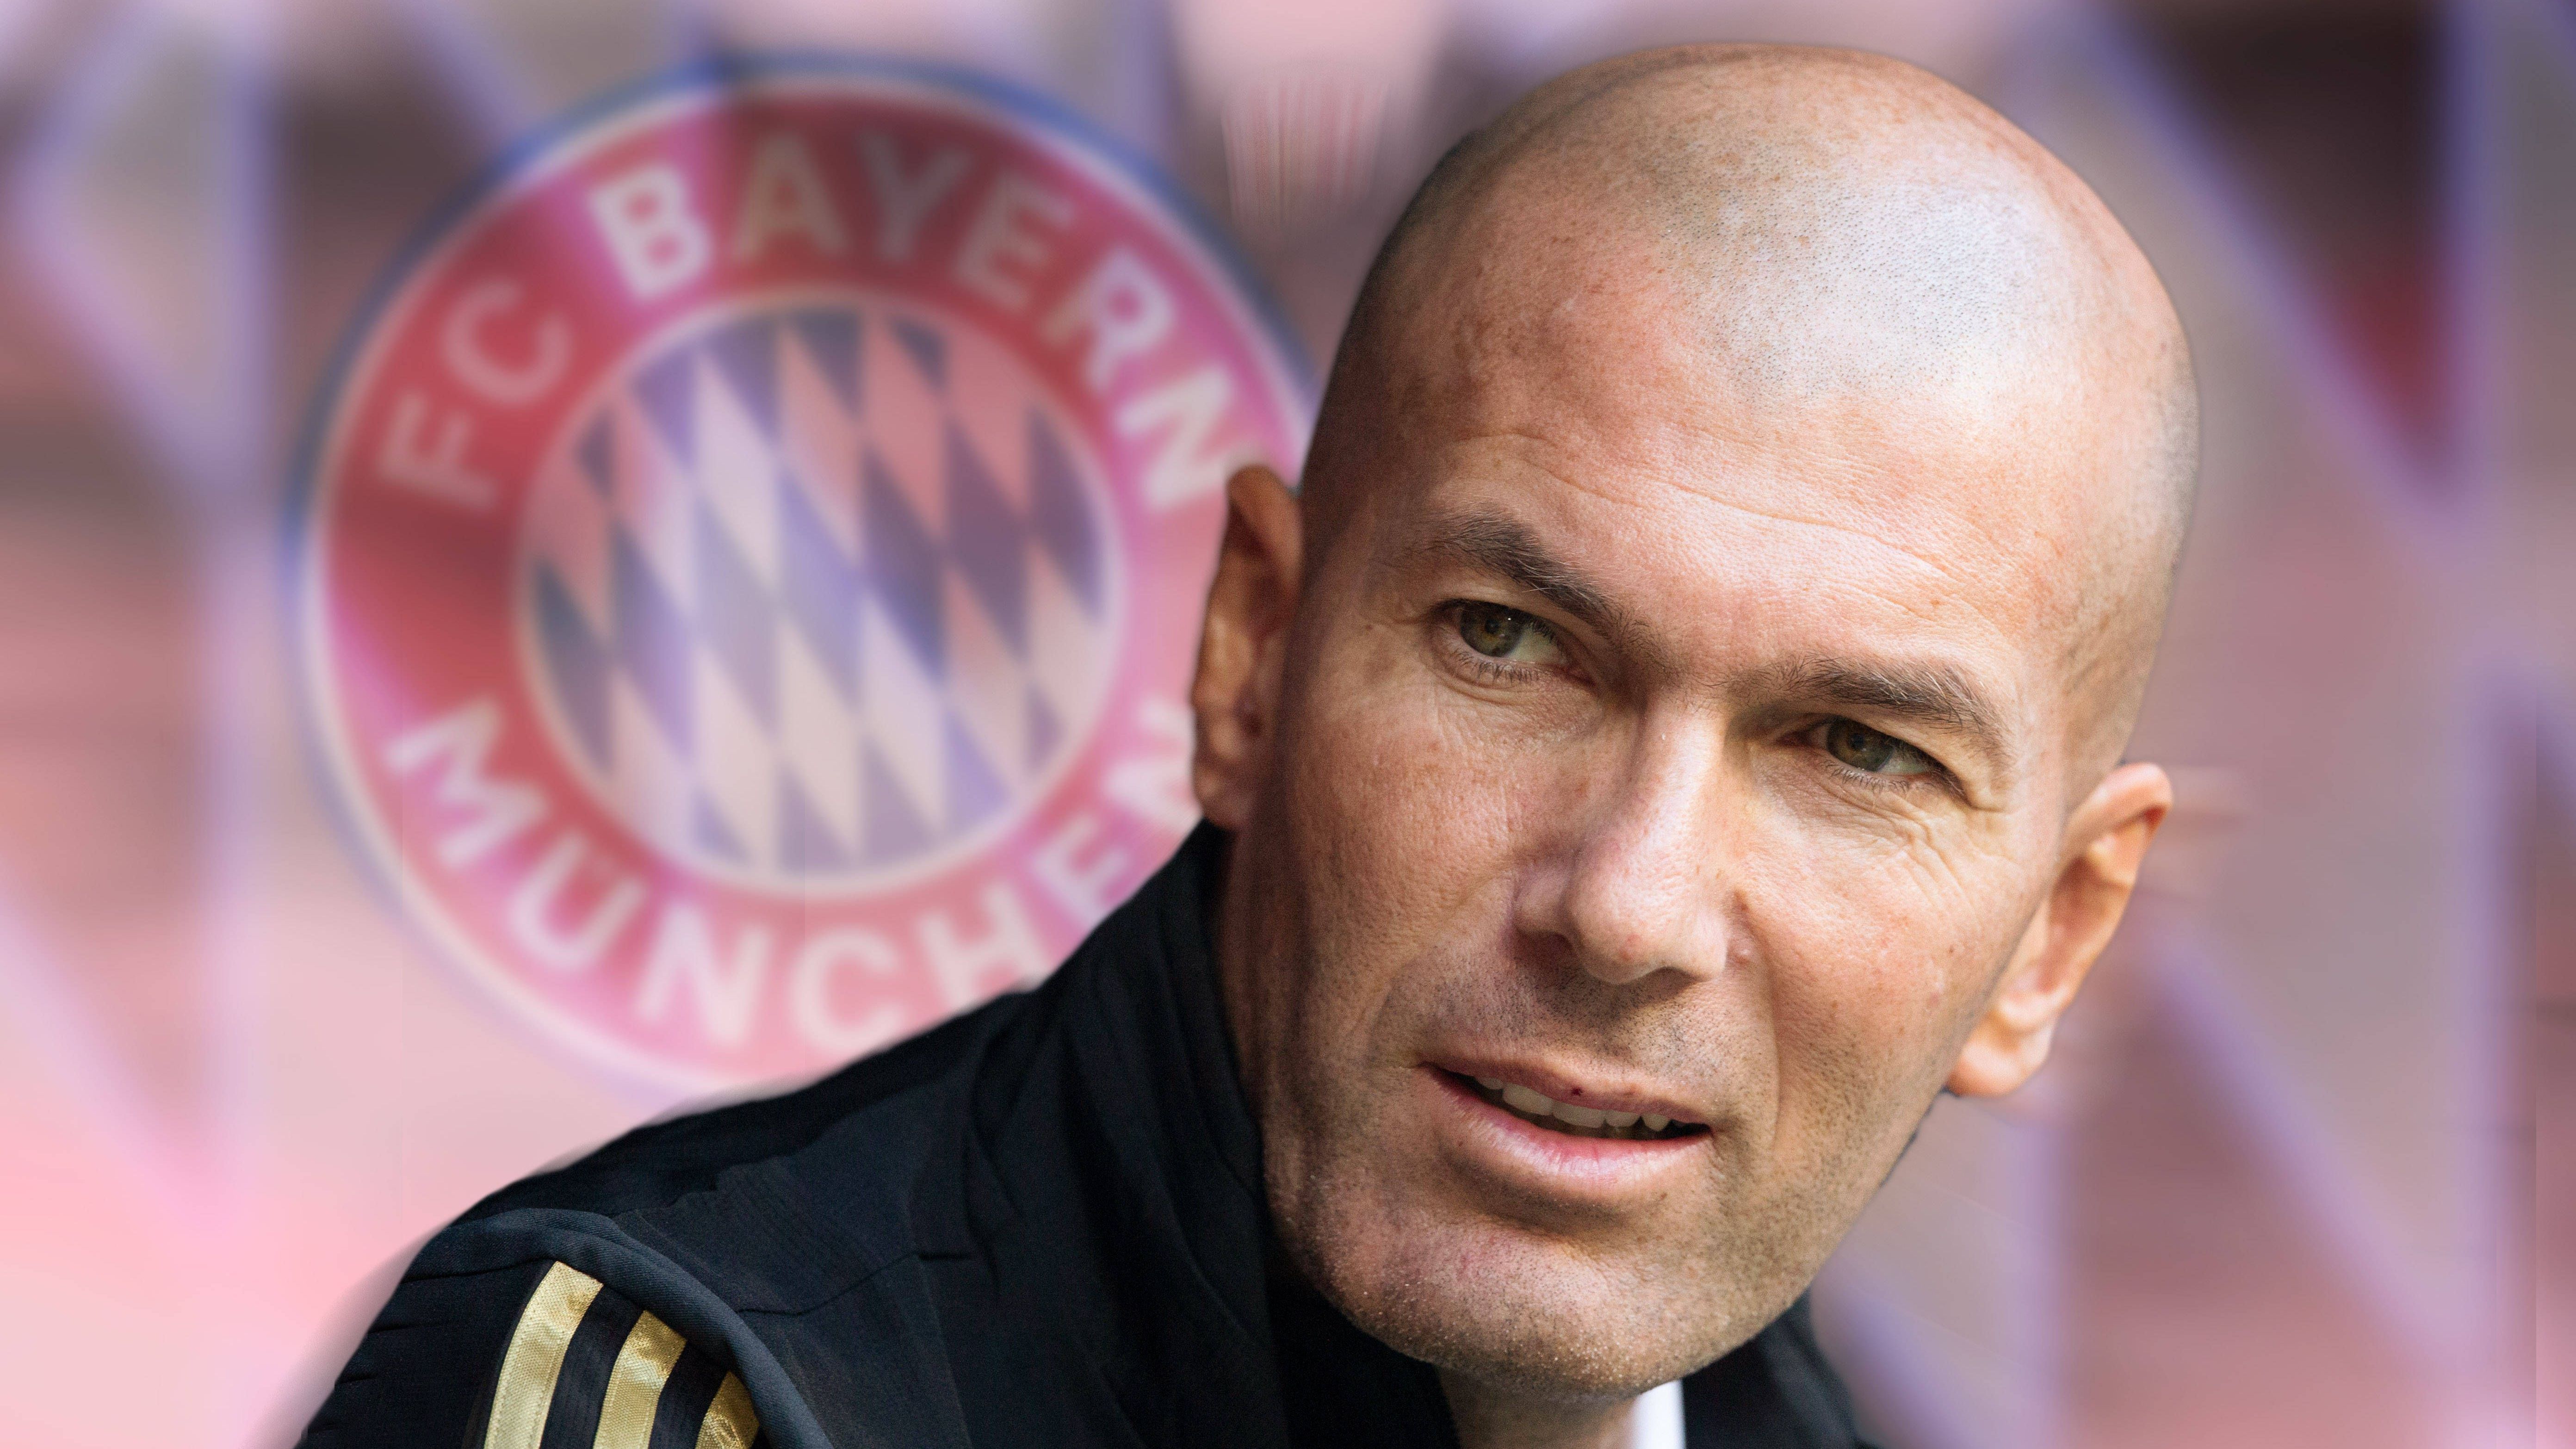 <strong>Pro: Zinedine Zidane (vereinslos)</strong><br>Es wäre "sensationell", würde einer der besten Kicker aller Zeiten beim FC Bayern anheuern. Sagt Bastian Schweinsteiger und spricht damit wohl vielen Fans aus der Seele. Gepaart mit einer beachtlichen Erfolgsbilanz (3 CL-Titel mit Real Madrid) und ausgestattet mit einem Charisma wie Pep Guardiola gilt Zidane als Traum-Kandidat. Die "Bild" bringt zudem Publikumsliebling Franck Ribery als Co-Trainer ins Gespräch, so hätte sich die Sprachbarriere auch erledigt.&nbsp;